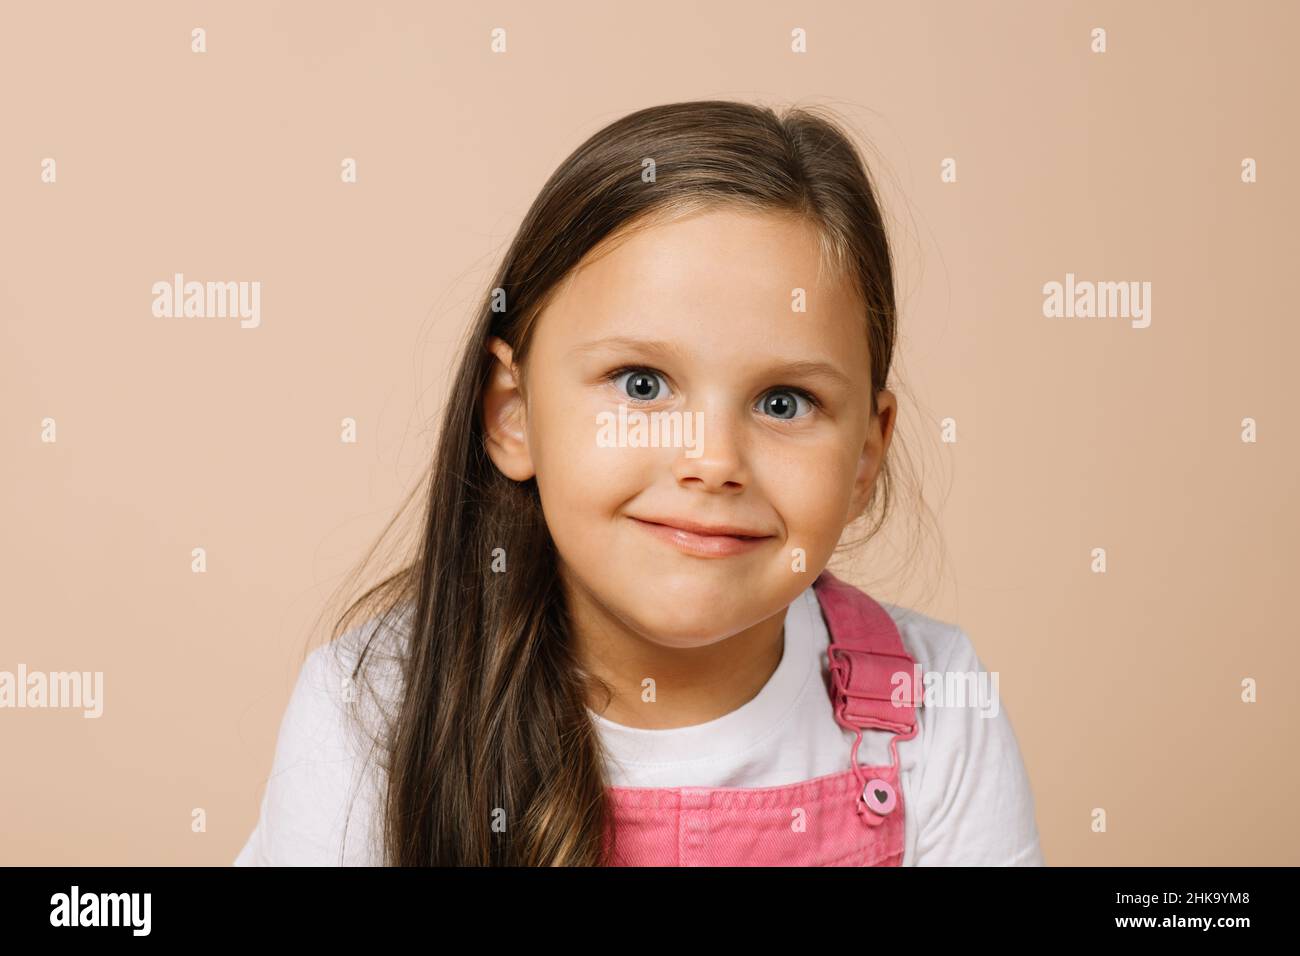 Portrait d'un enfant avec des yeux brillants légèrement renflés et un sourire éclatant regardant l'appareil photo portant une combinaison rose vif et un t-shirt blanc sur beige Banque D'Images